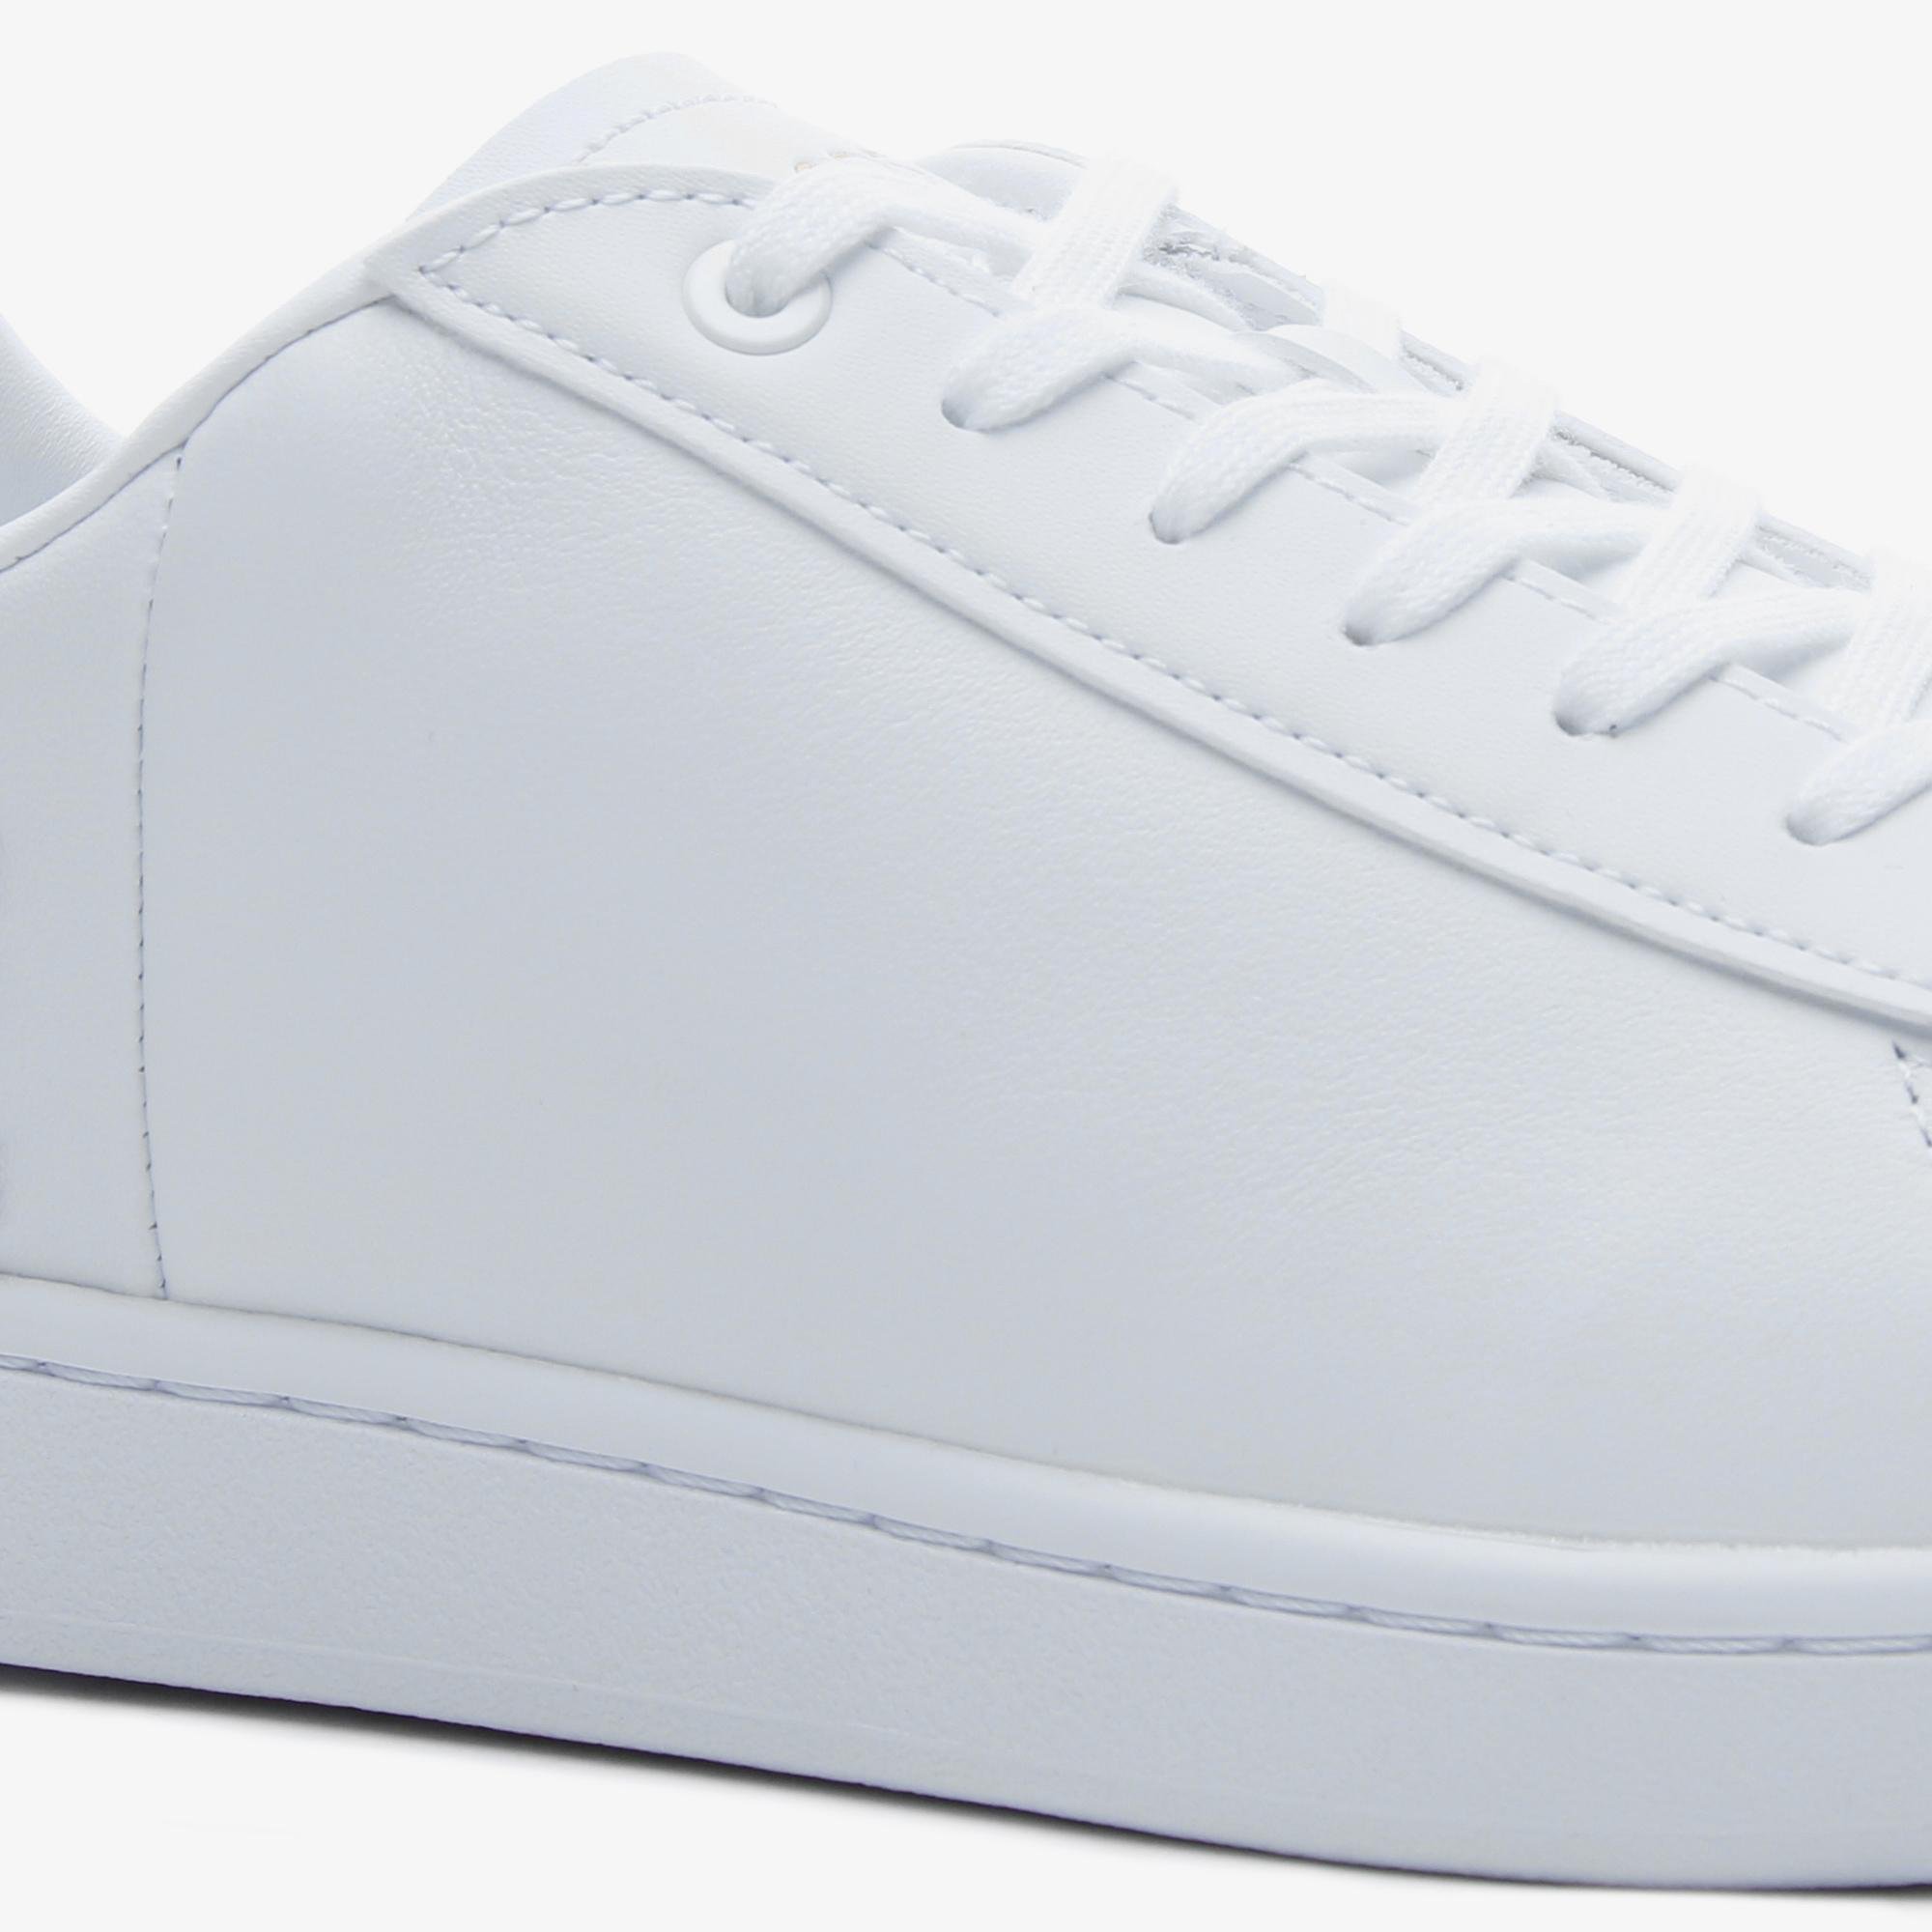 Lacoste Carnaby Evo 120 6 Us Sfa Kadın Beyaz Deri Sneaker